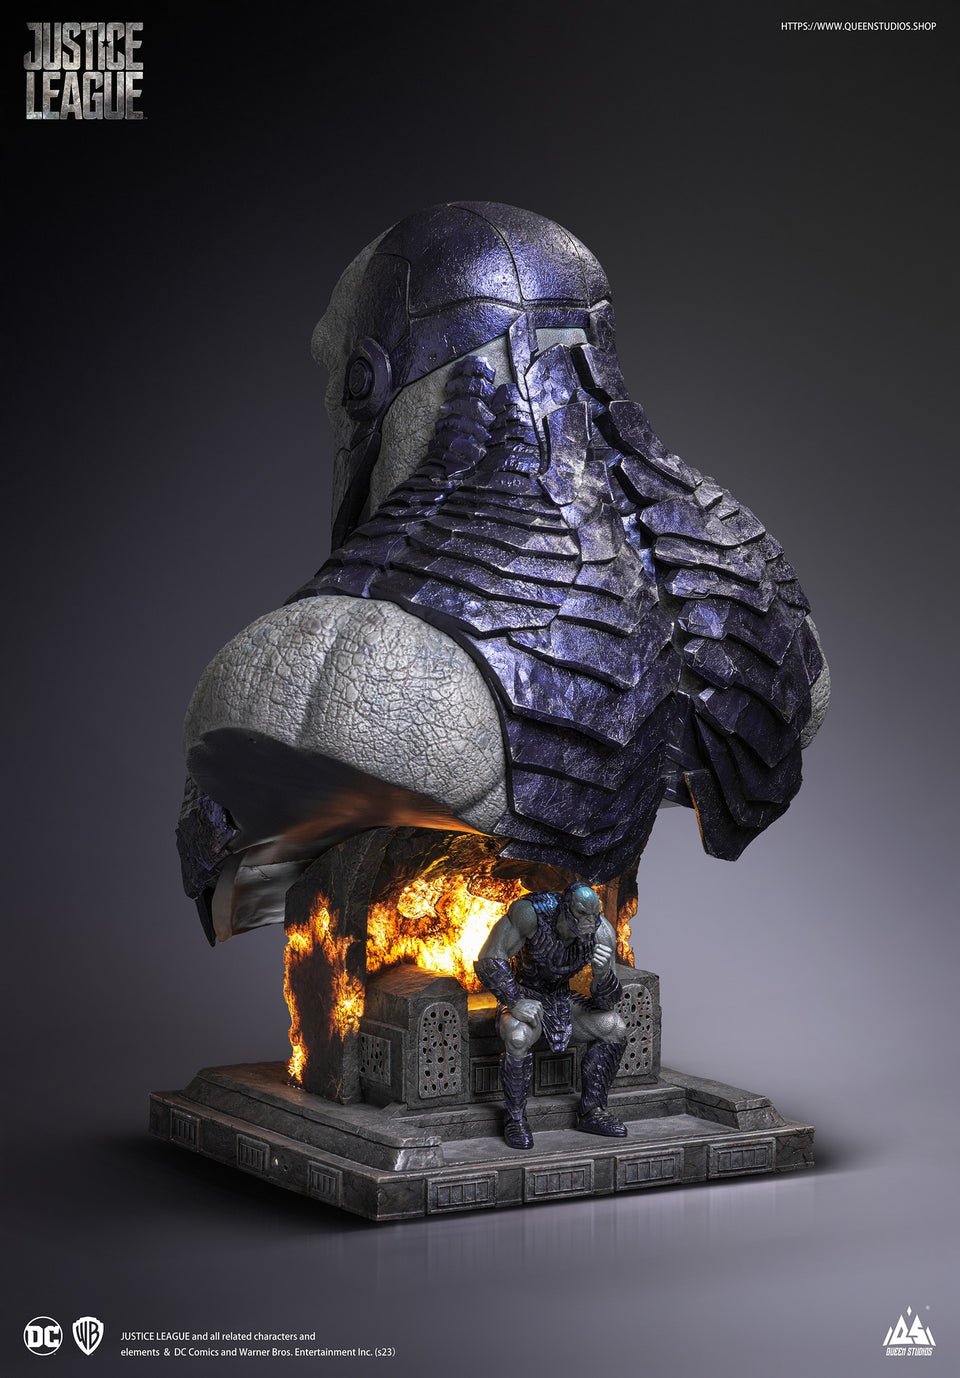 Queen Studios Darkseid Life-Size Bust 1/1 Scale Statue